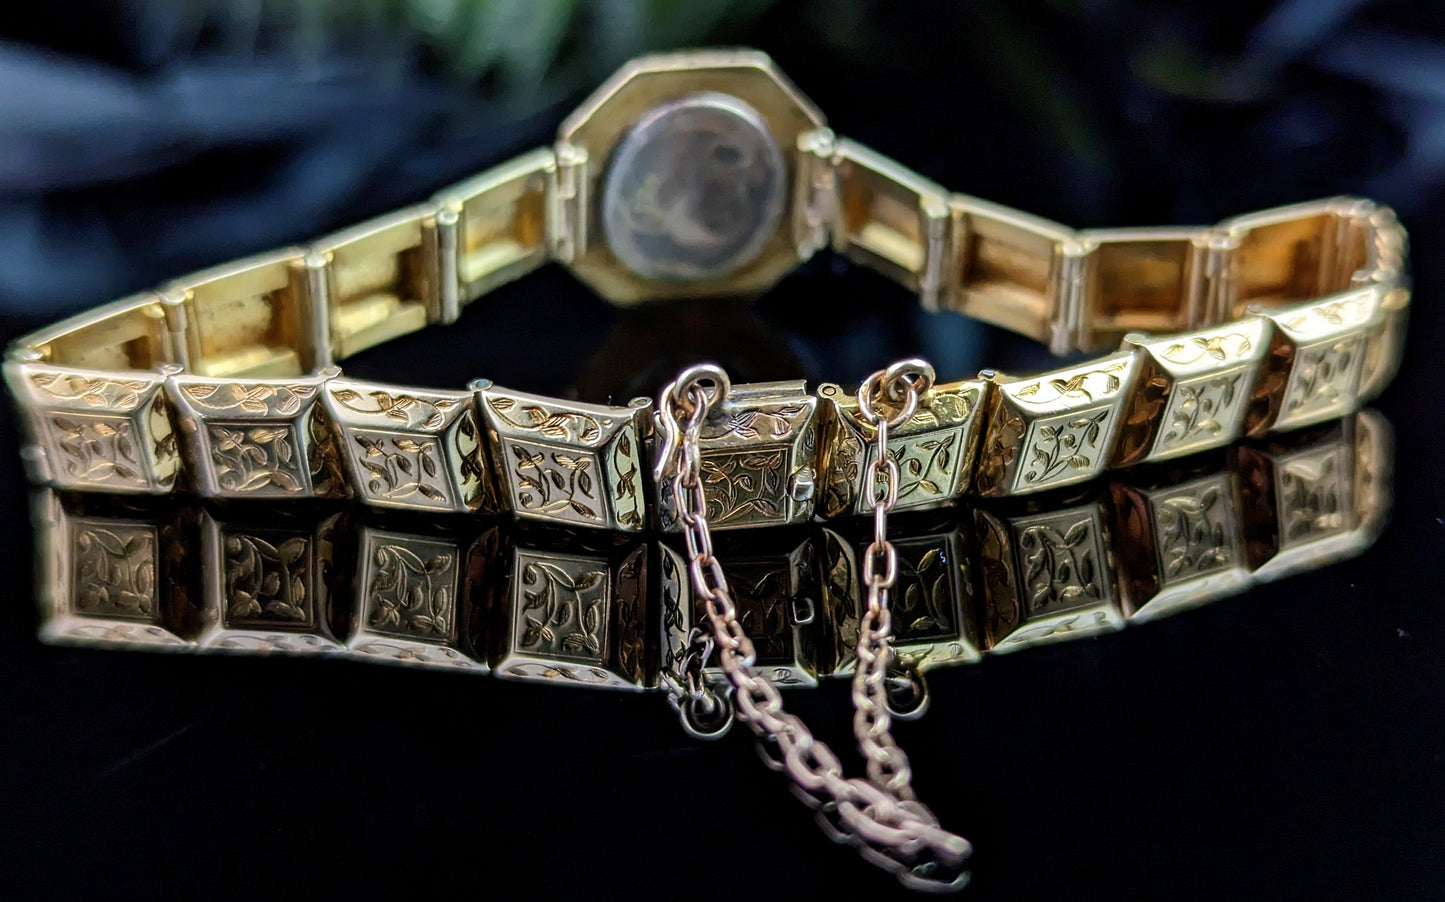 Antique 18ct gold Mourning bracelet, Blue enamel, Victorian